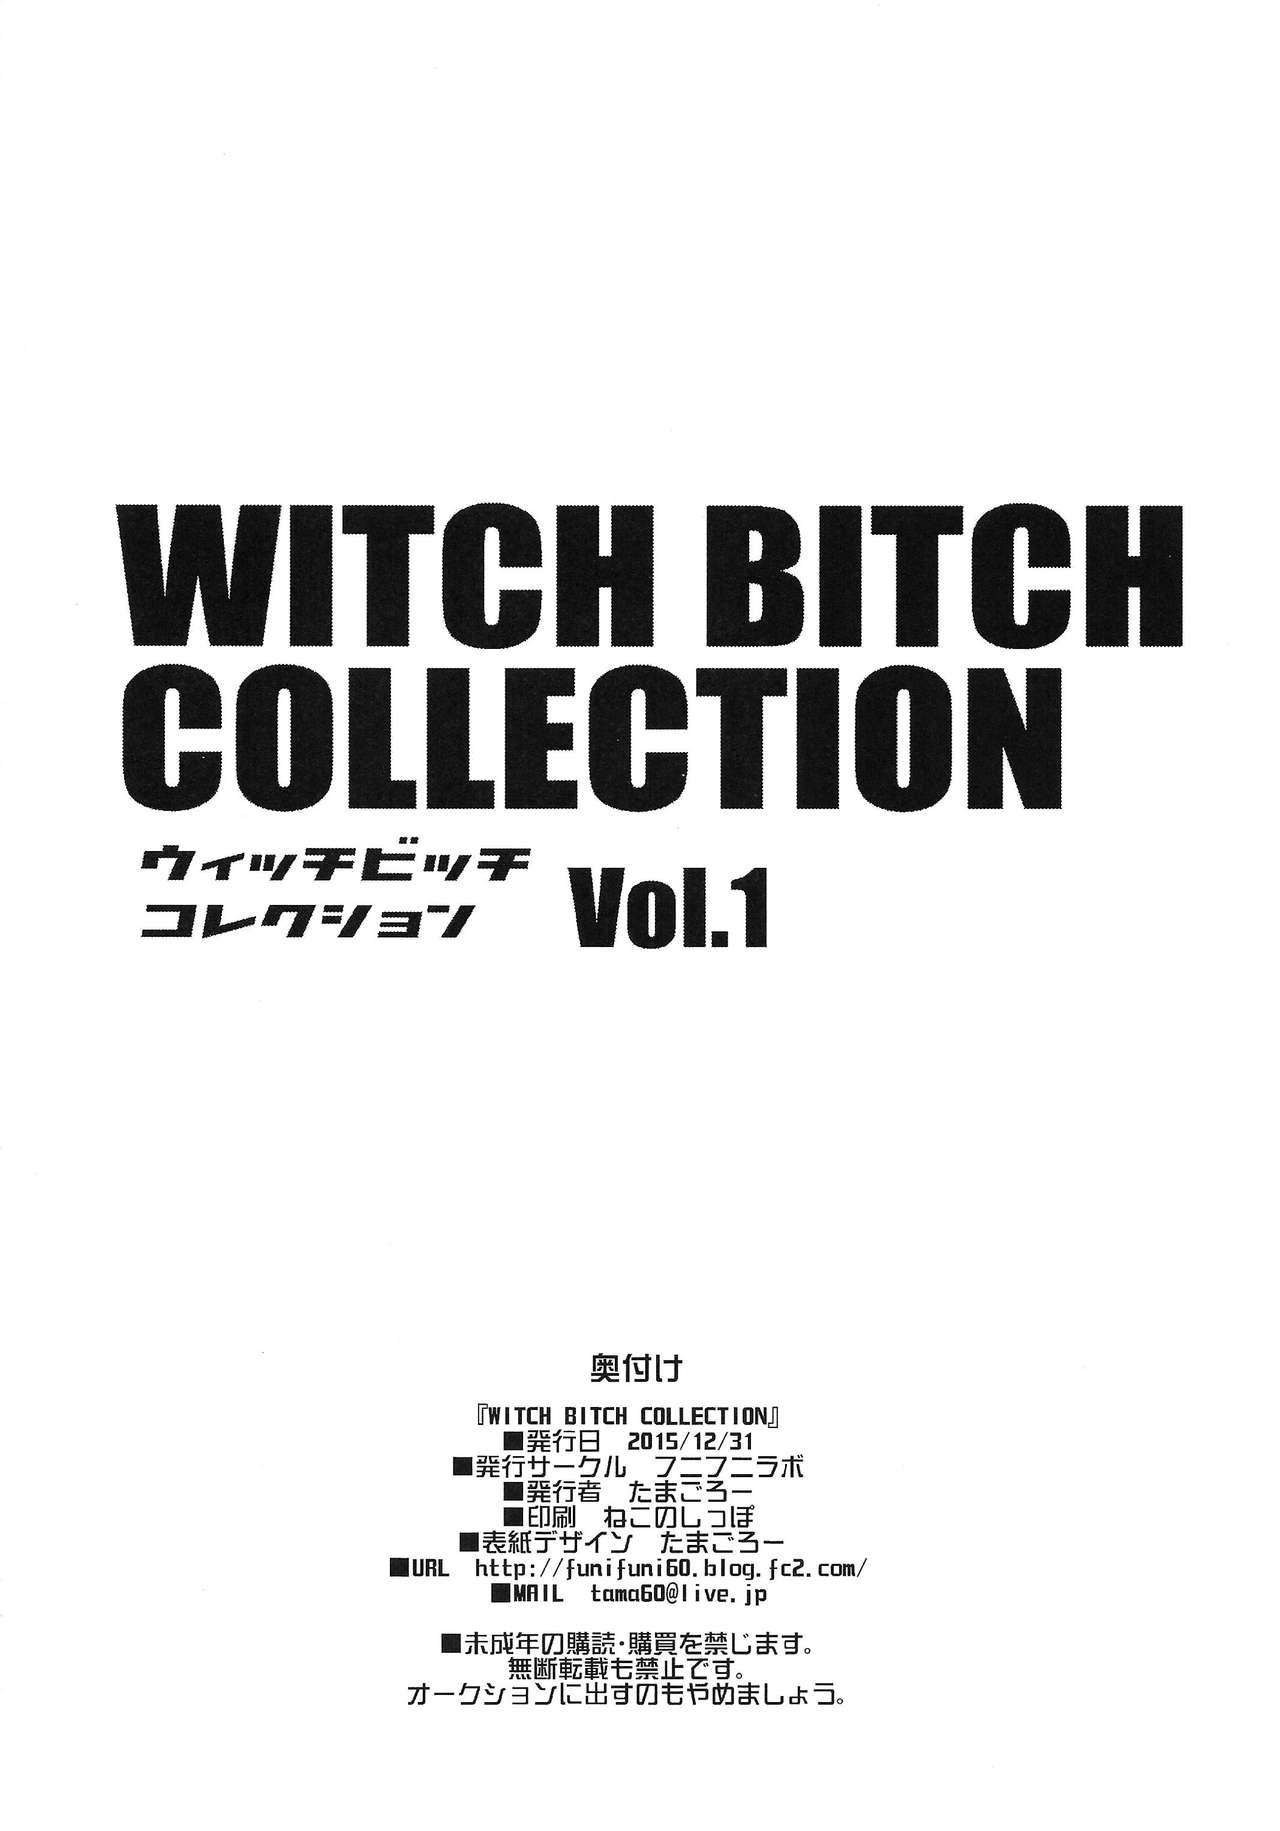 Chichikko Bitch 2 - Witch Bitch Collection Vol.1 VERSION 24